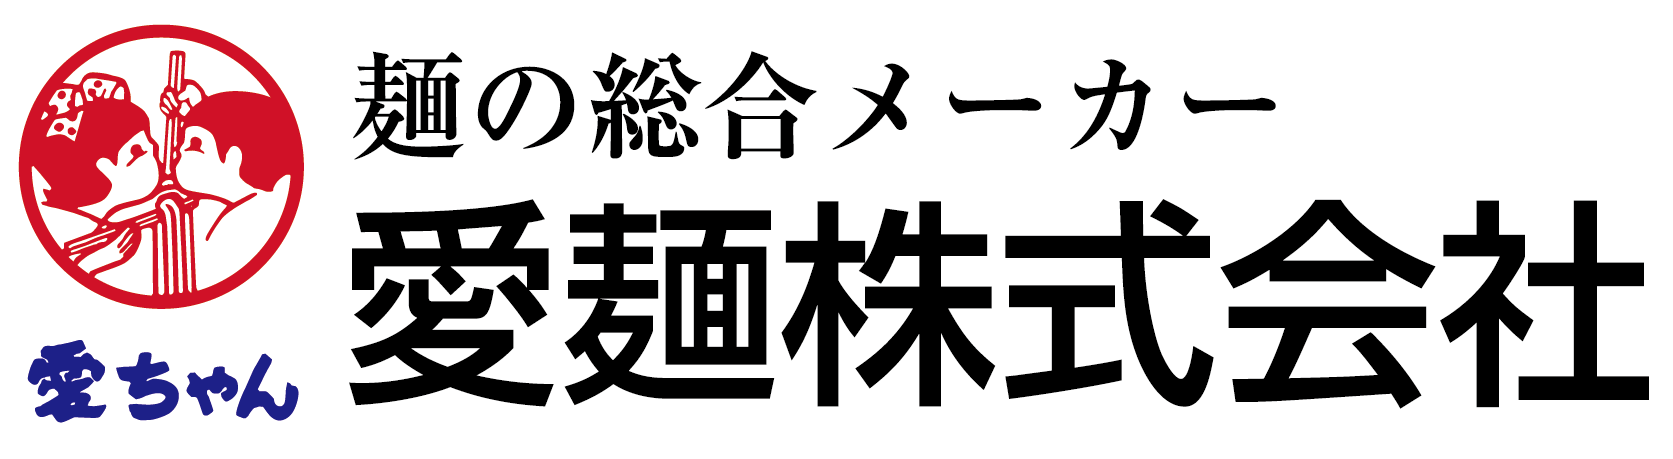 愛麺株式会社